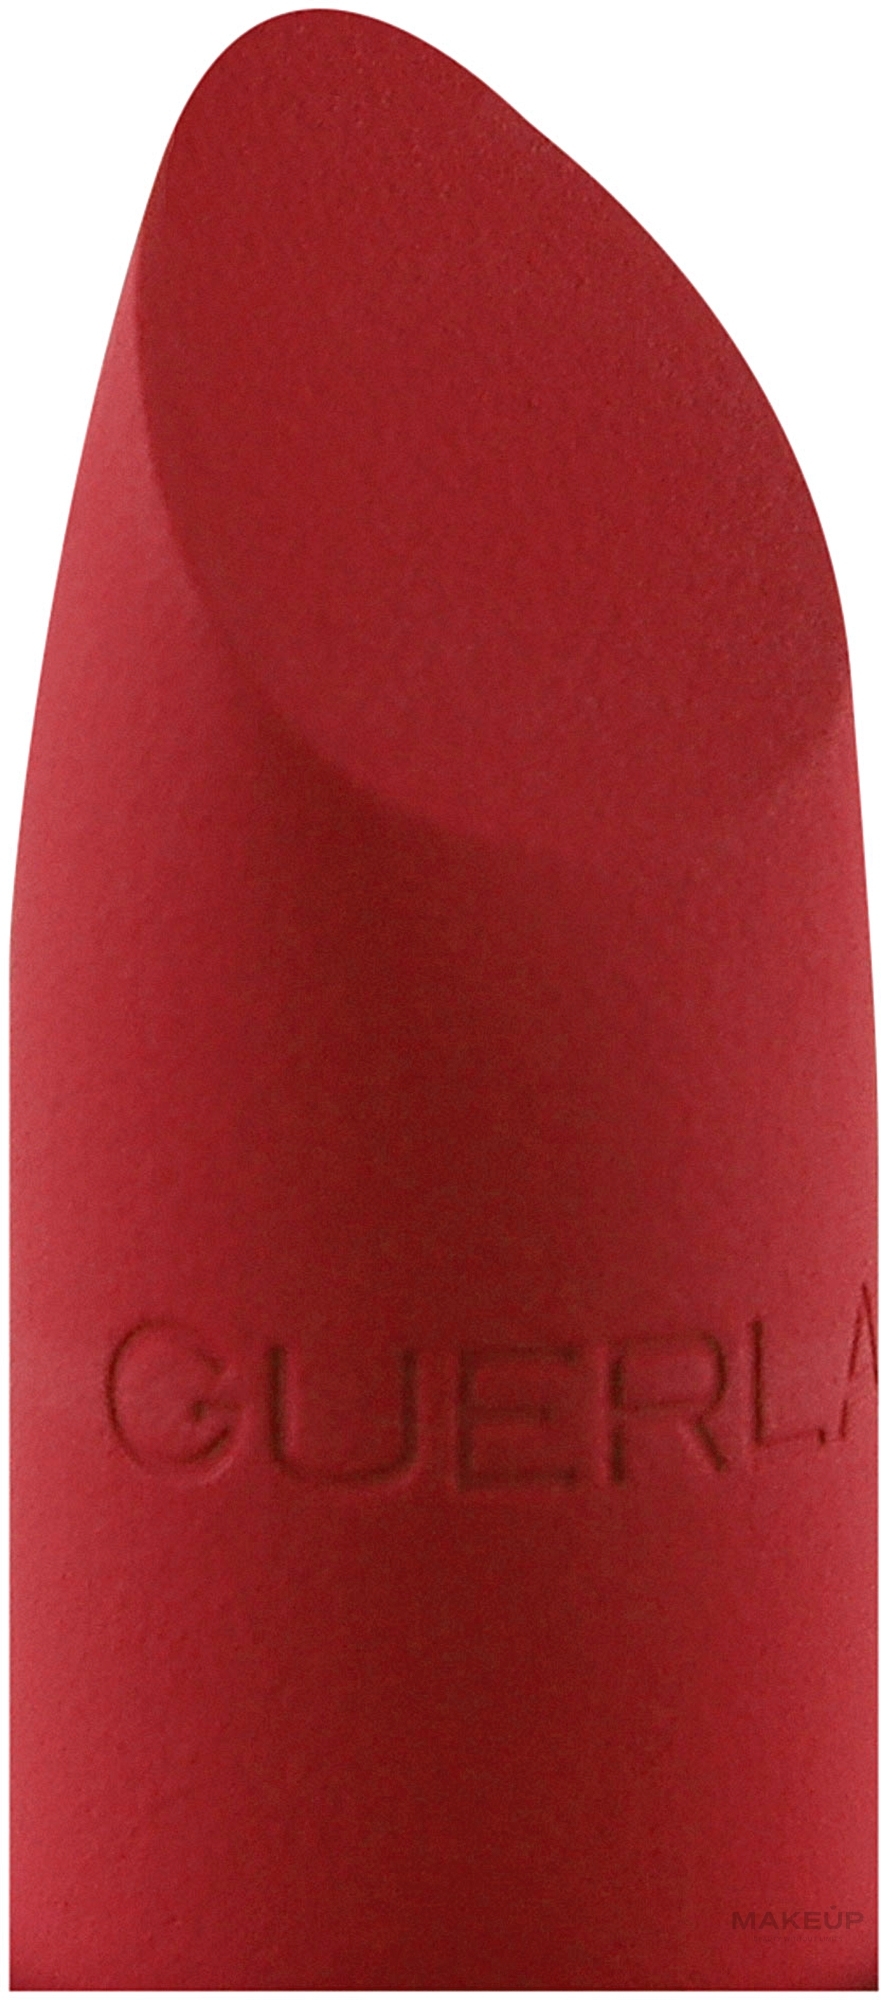 Матовая бархатная помада - Guerlain Rouge G Luxurious Velvet — фото 214 - Flame Red